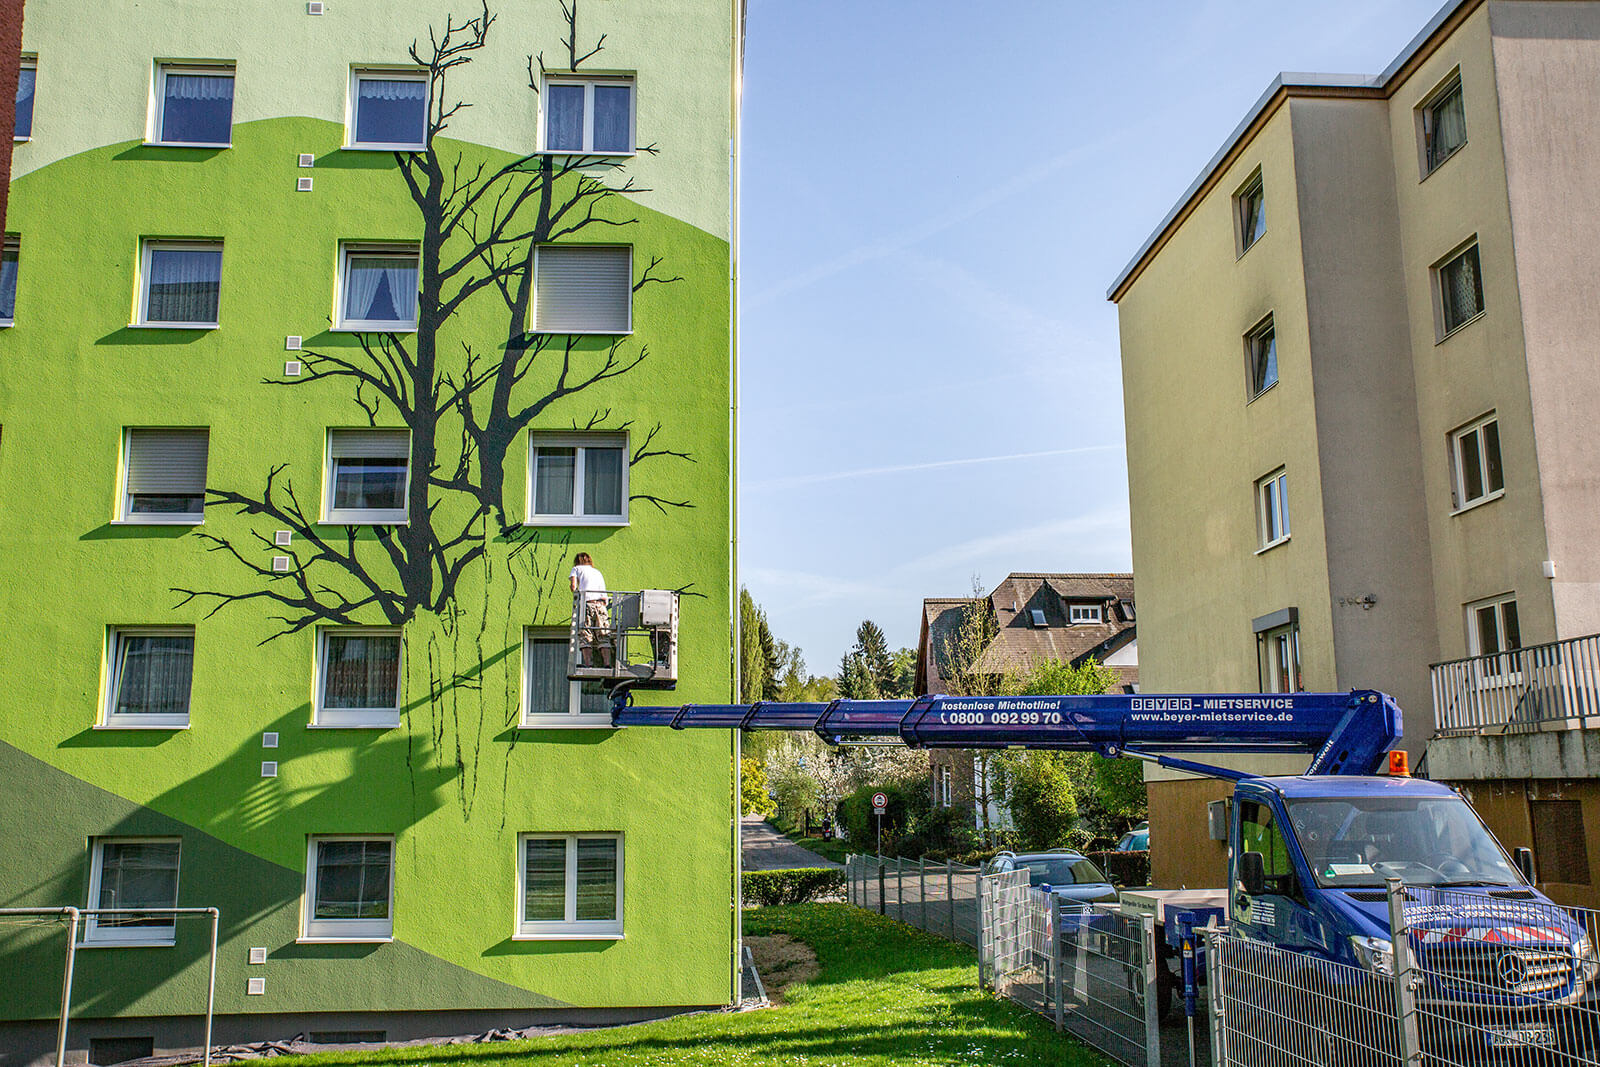 27 m LKW-Steiger auf 3,5 to Fahrgestell unterstützt Malerarbeiten an Fassade durch Übergreifen von Zaun